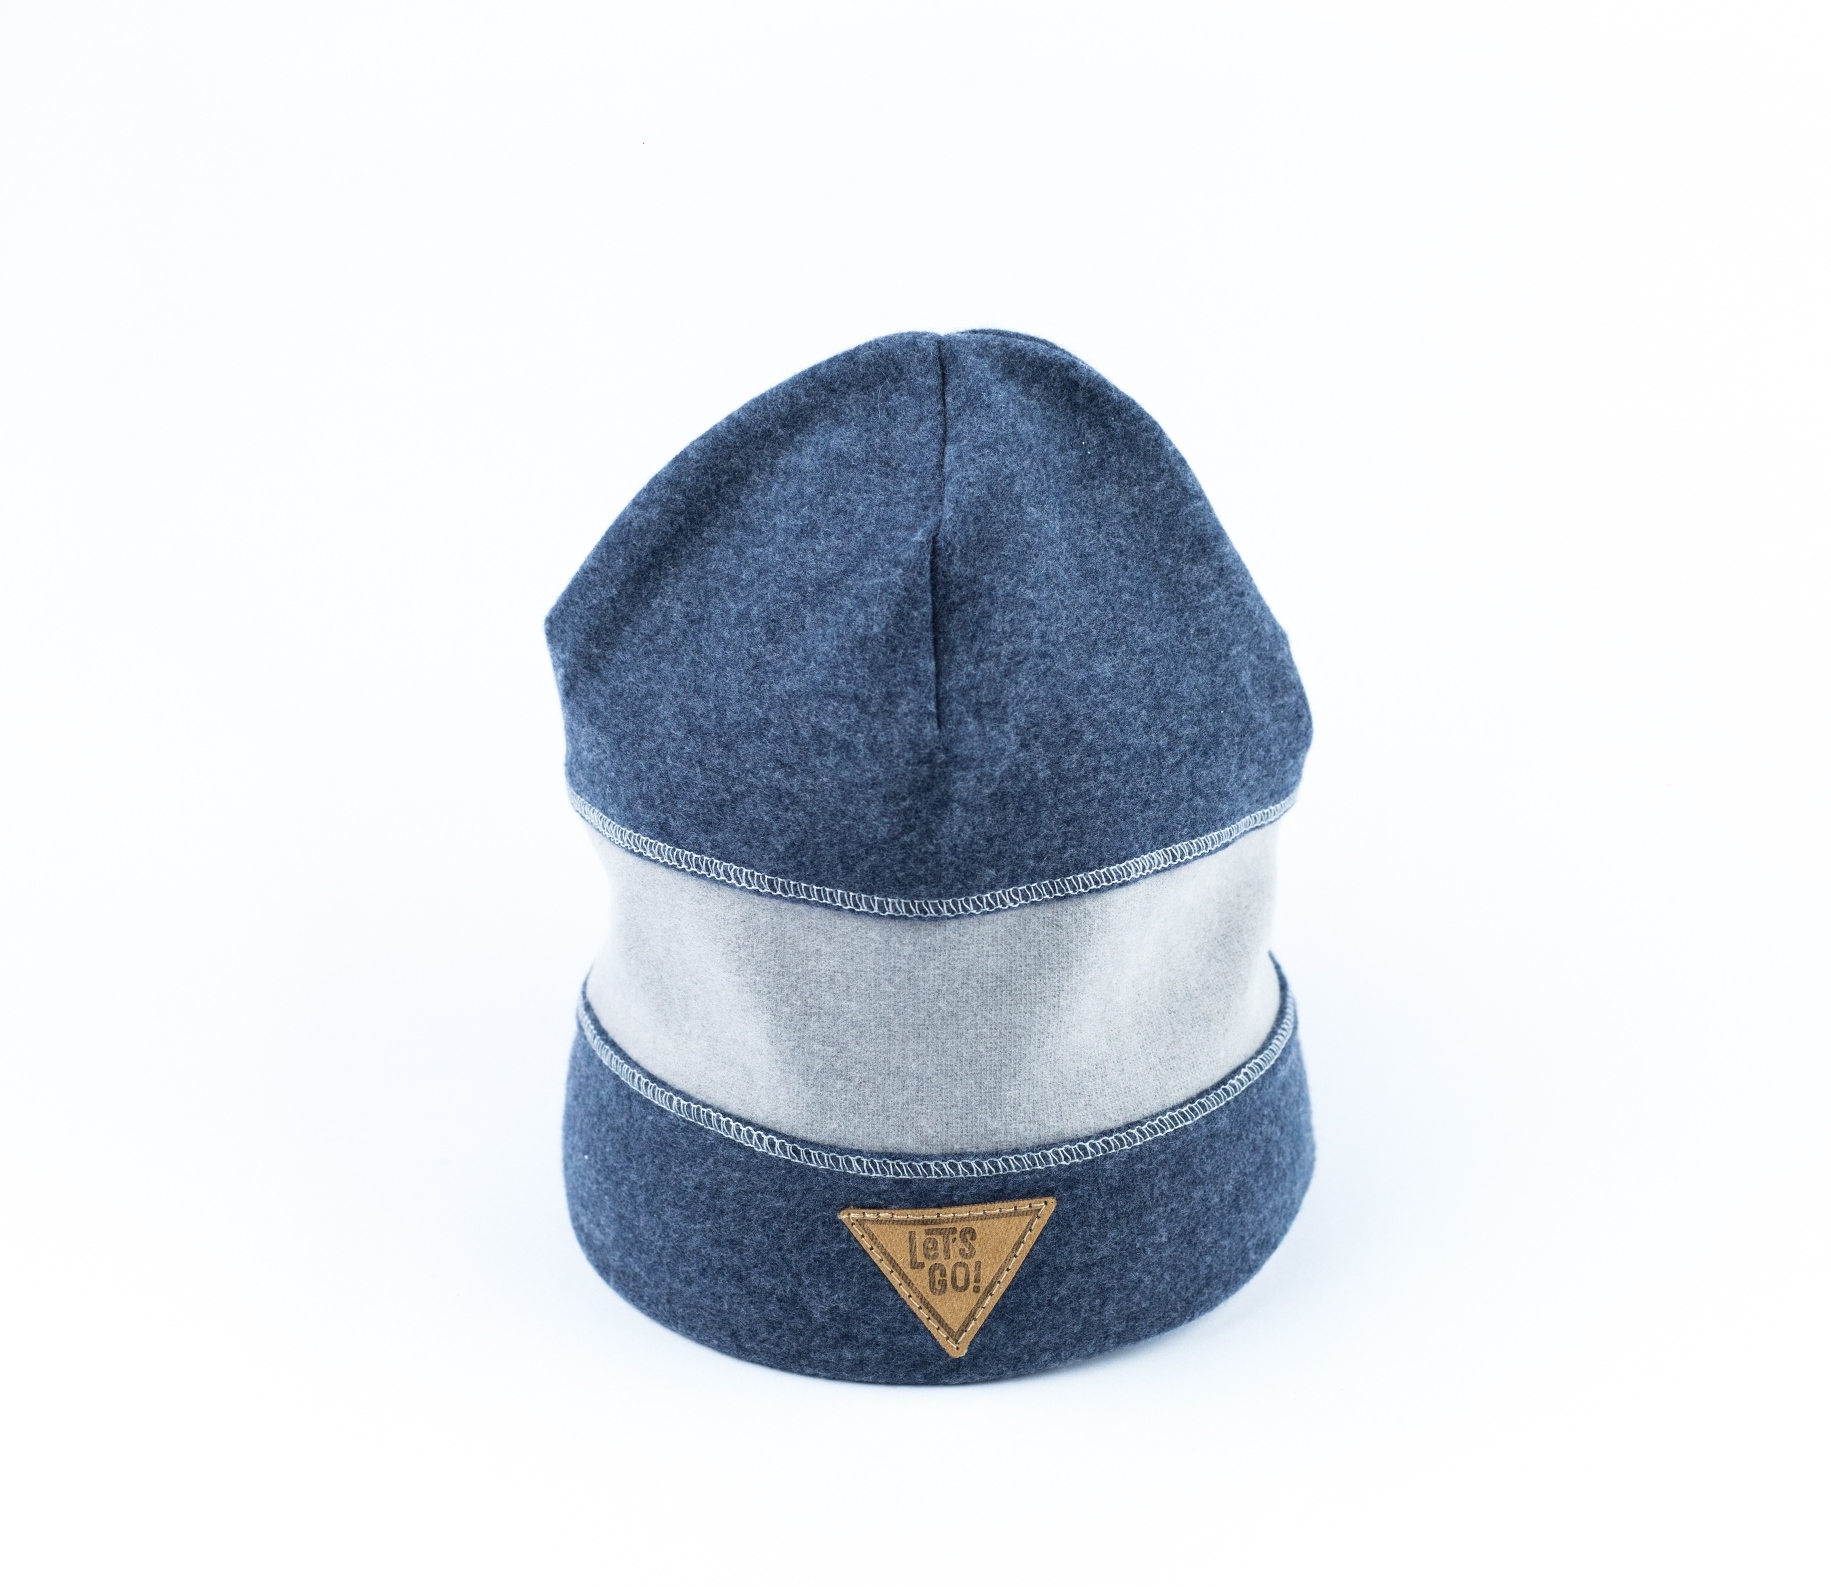 Chapčenská pruhovaná čiapka Lets go MZ-3461 modrá